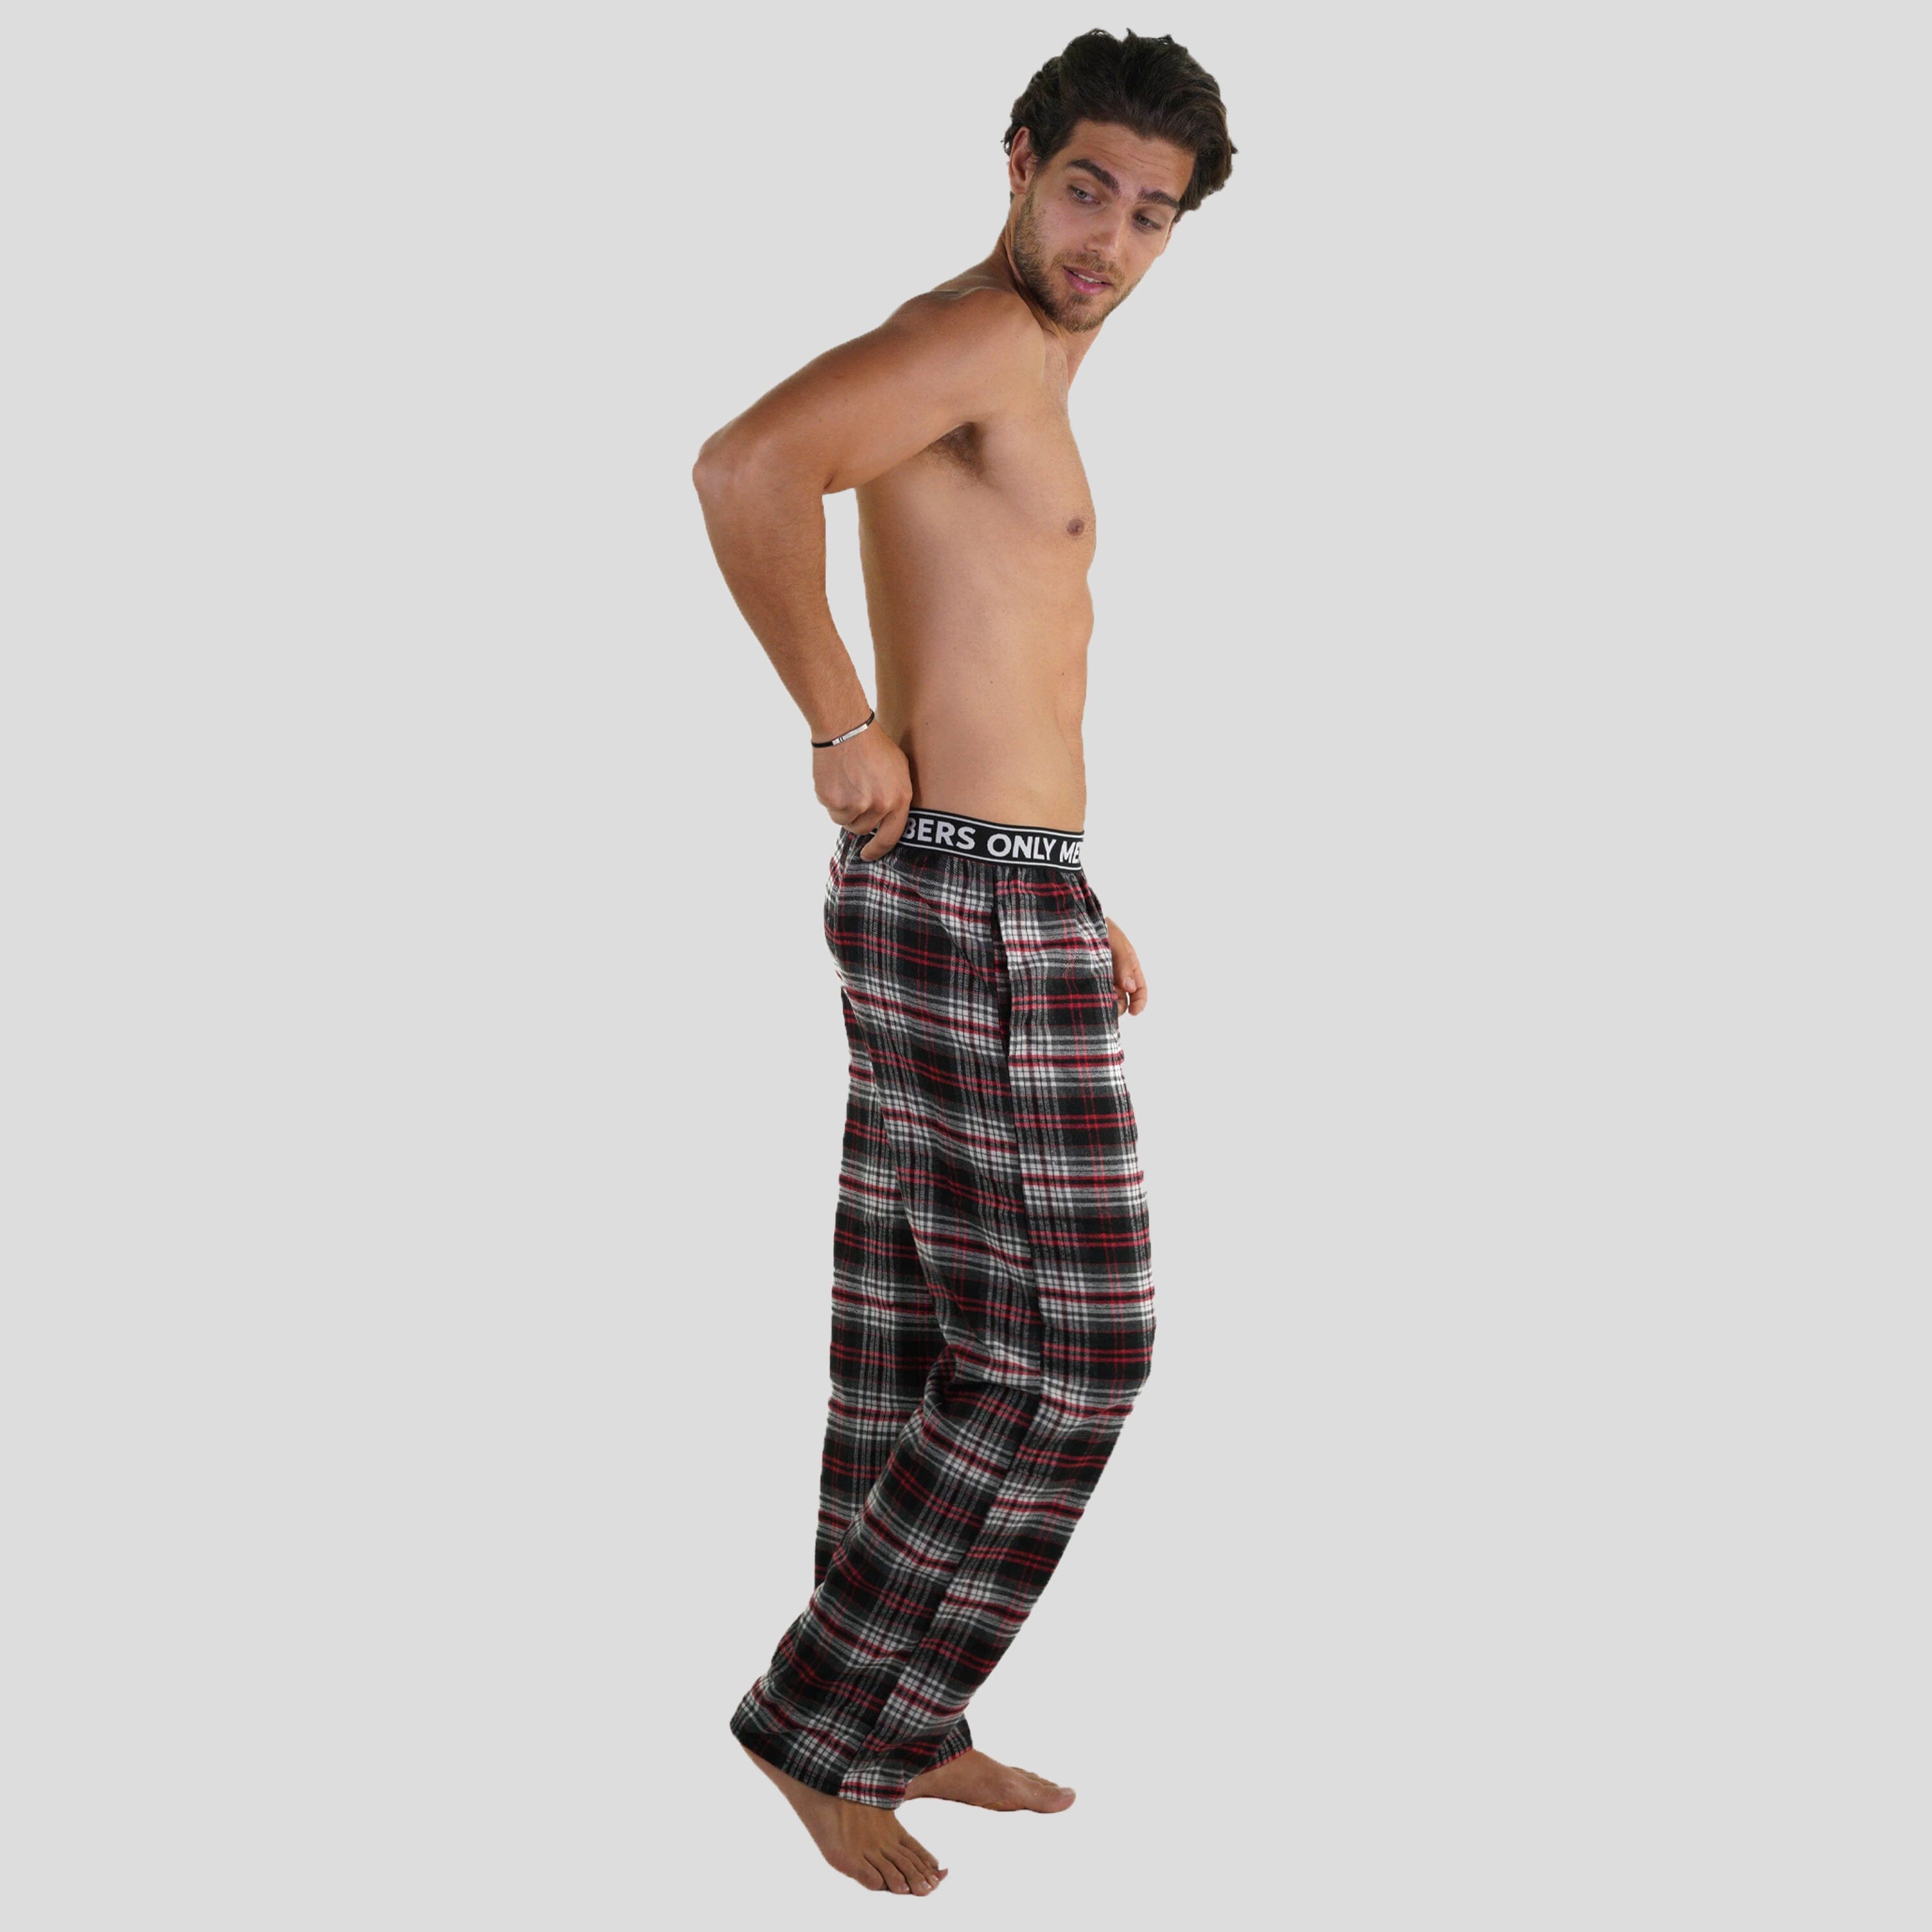 Men's Flannel Sleep Pants Logo Elastic - Red Sleepwear Pants Members Only 